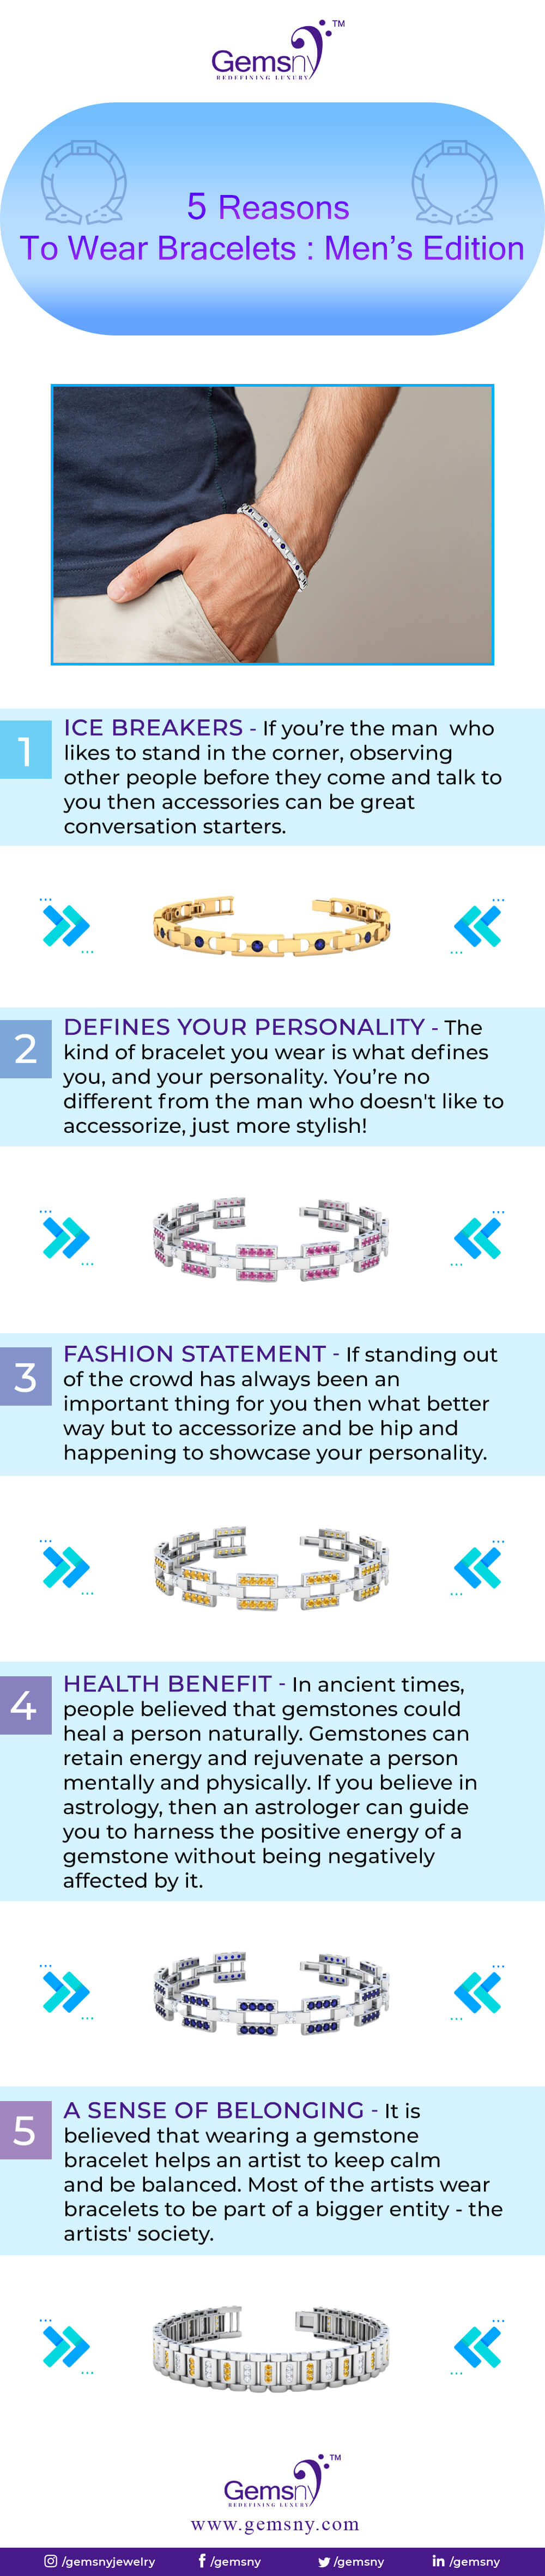 5 Reasons to Wear Bracelet: Men's Edition